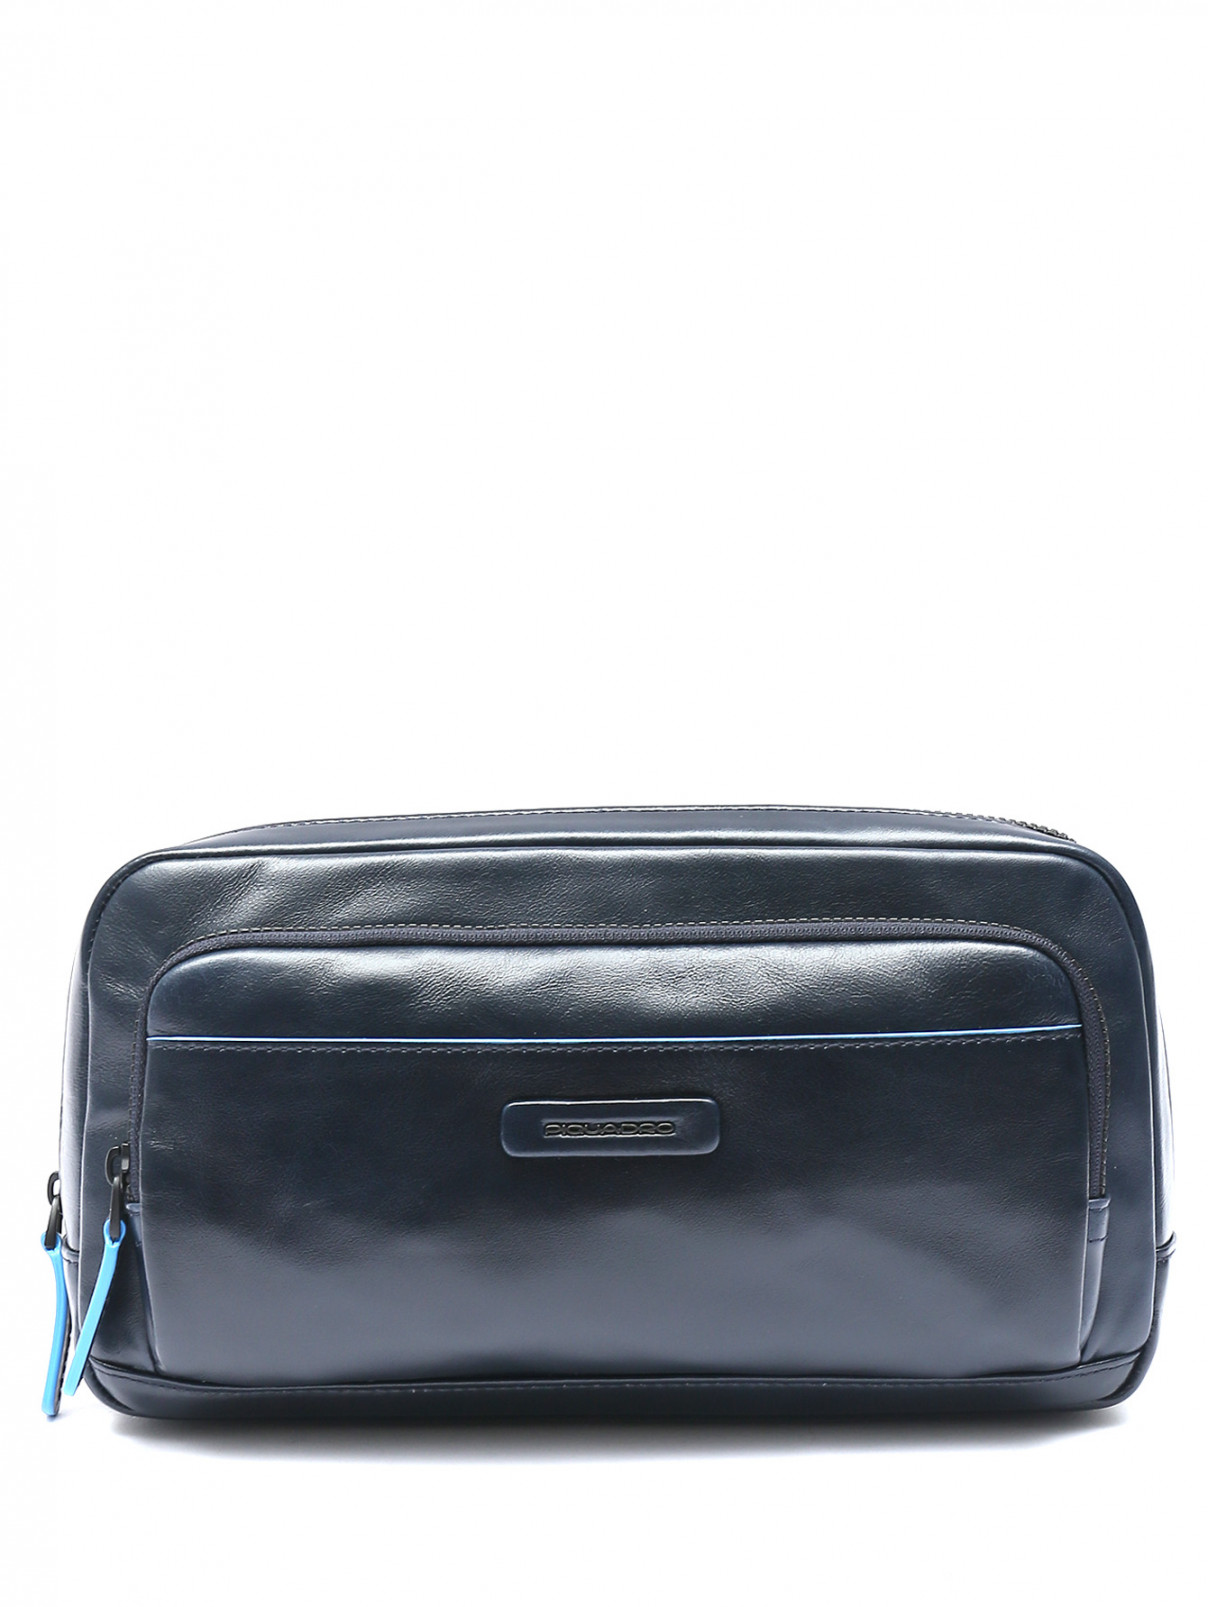 Поясная сумка из гладкой кожи с контрастной отделкой Piquadro  –  Общий вид  – Цвет:  Синий